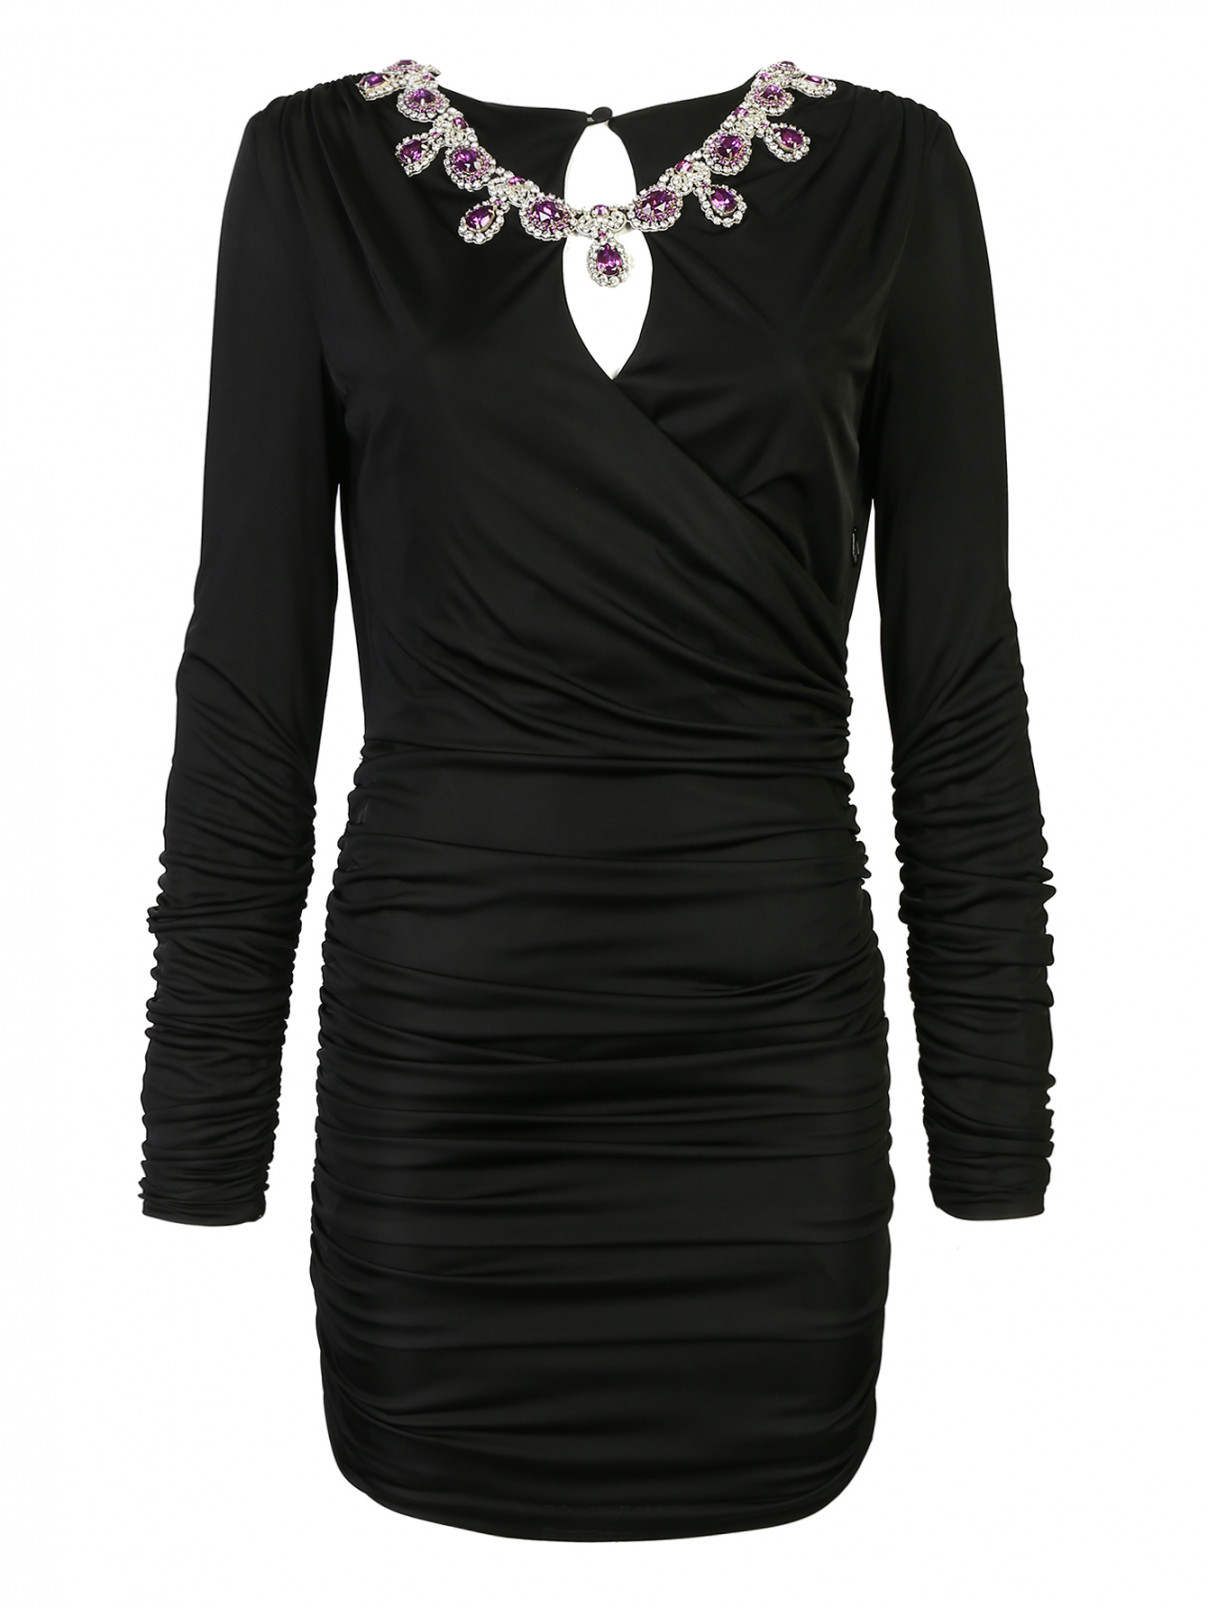 Платье трикотажное с драпировкой и декором стразами Moschino  –  Общий вид  – Цвет:  Черный